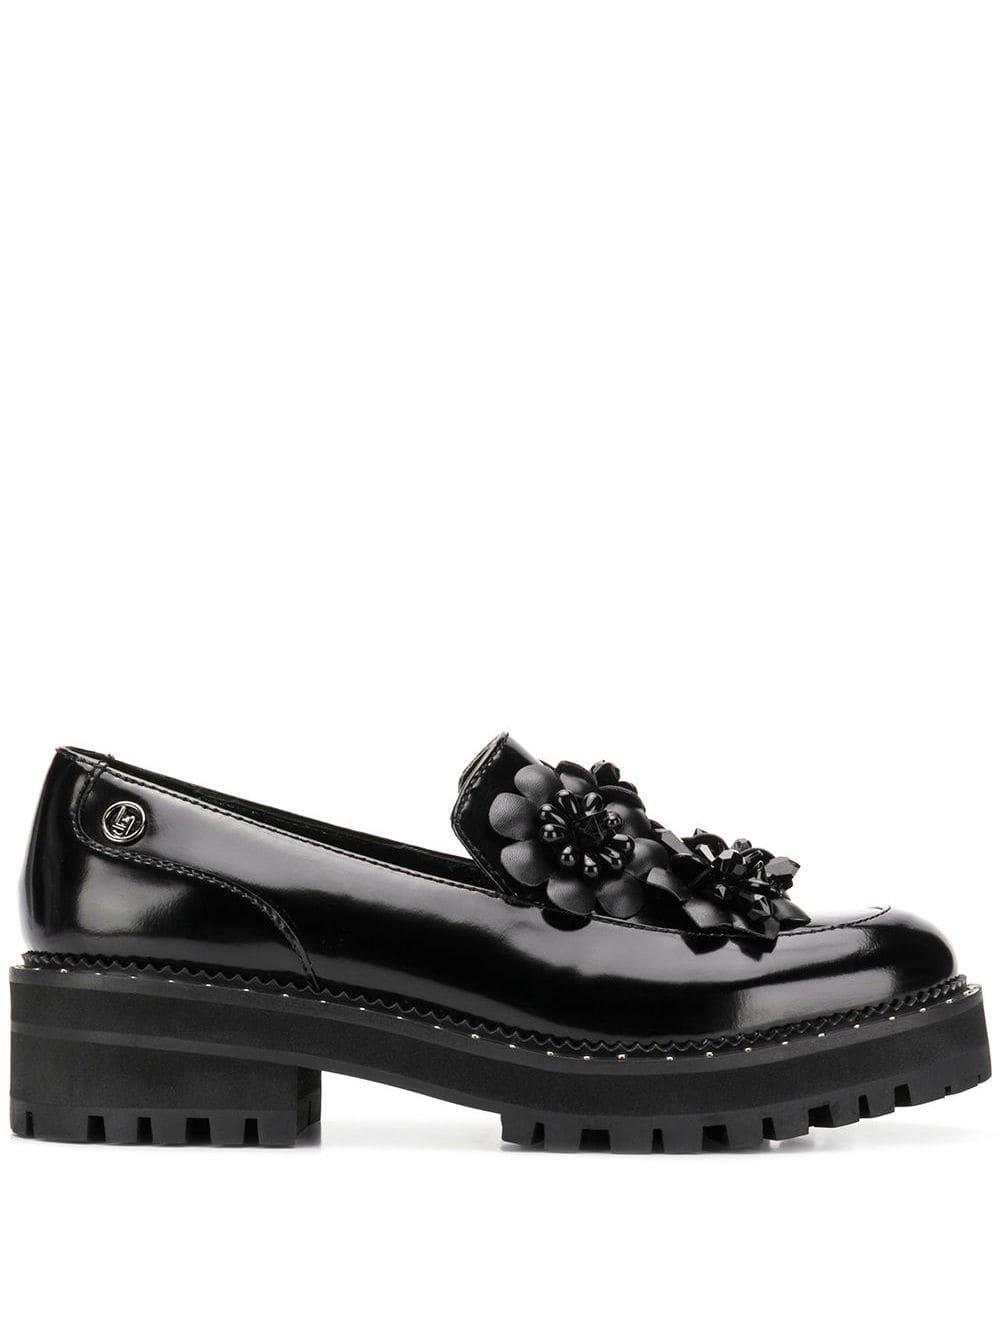 Liu Jo Leather Flower Appliqué Loafers in Black - Lyst